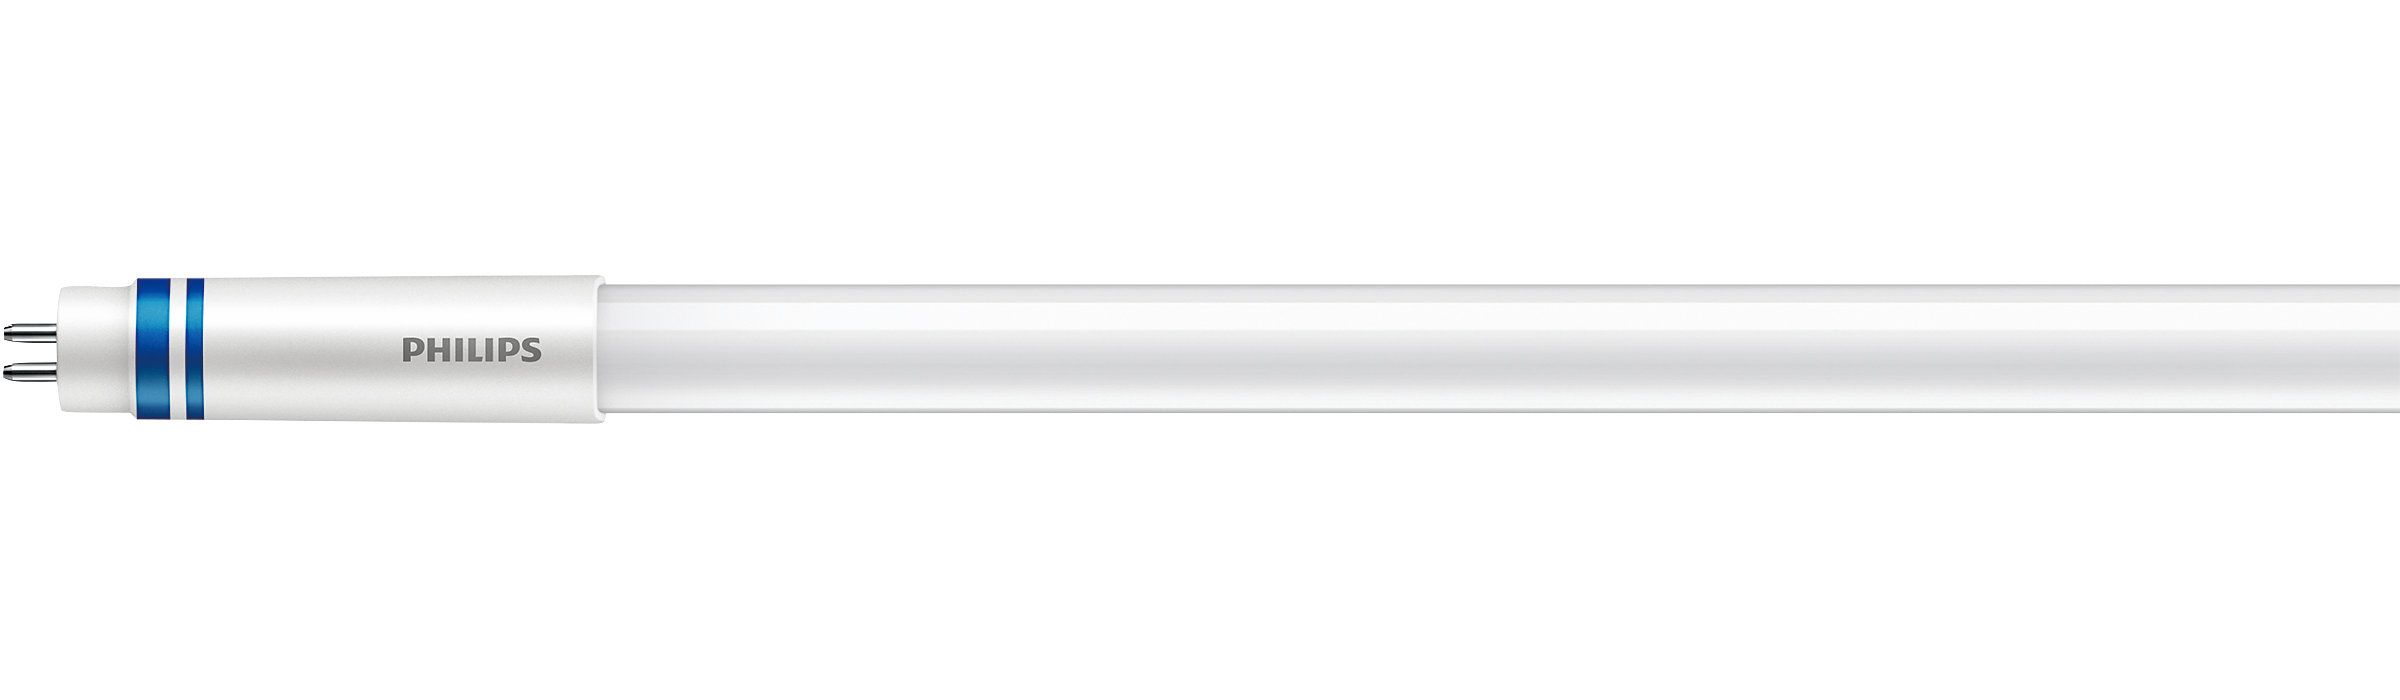 Лампа Philips MAS LEDtube HF 1200mm HO 26W 840 T5 OE (929002352102)